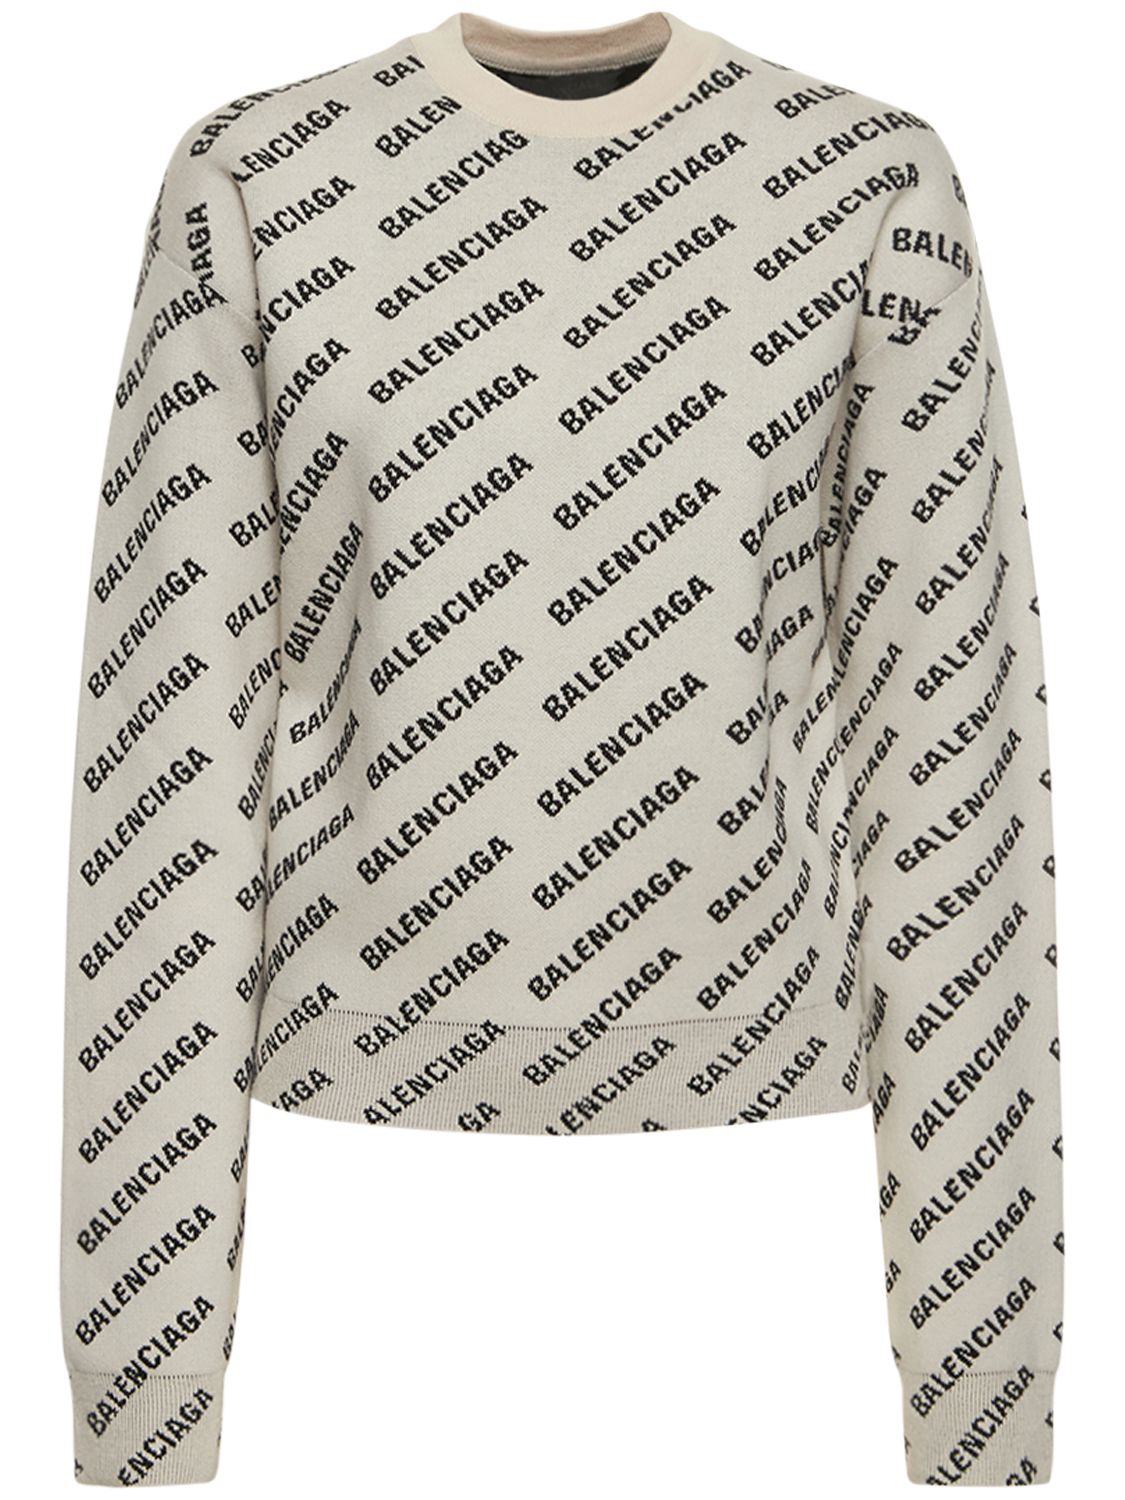 Sweatshirt Aus Baumwollmischung Mit Logo - BALENCIAGA - Modalova